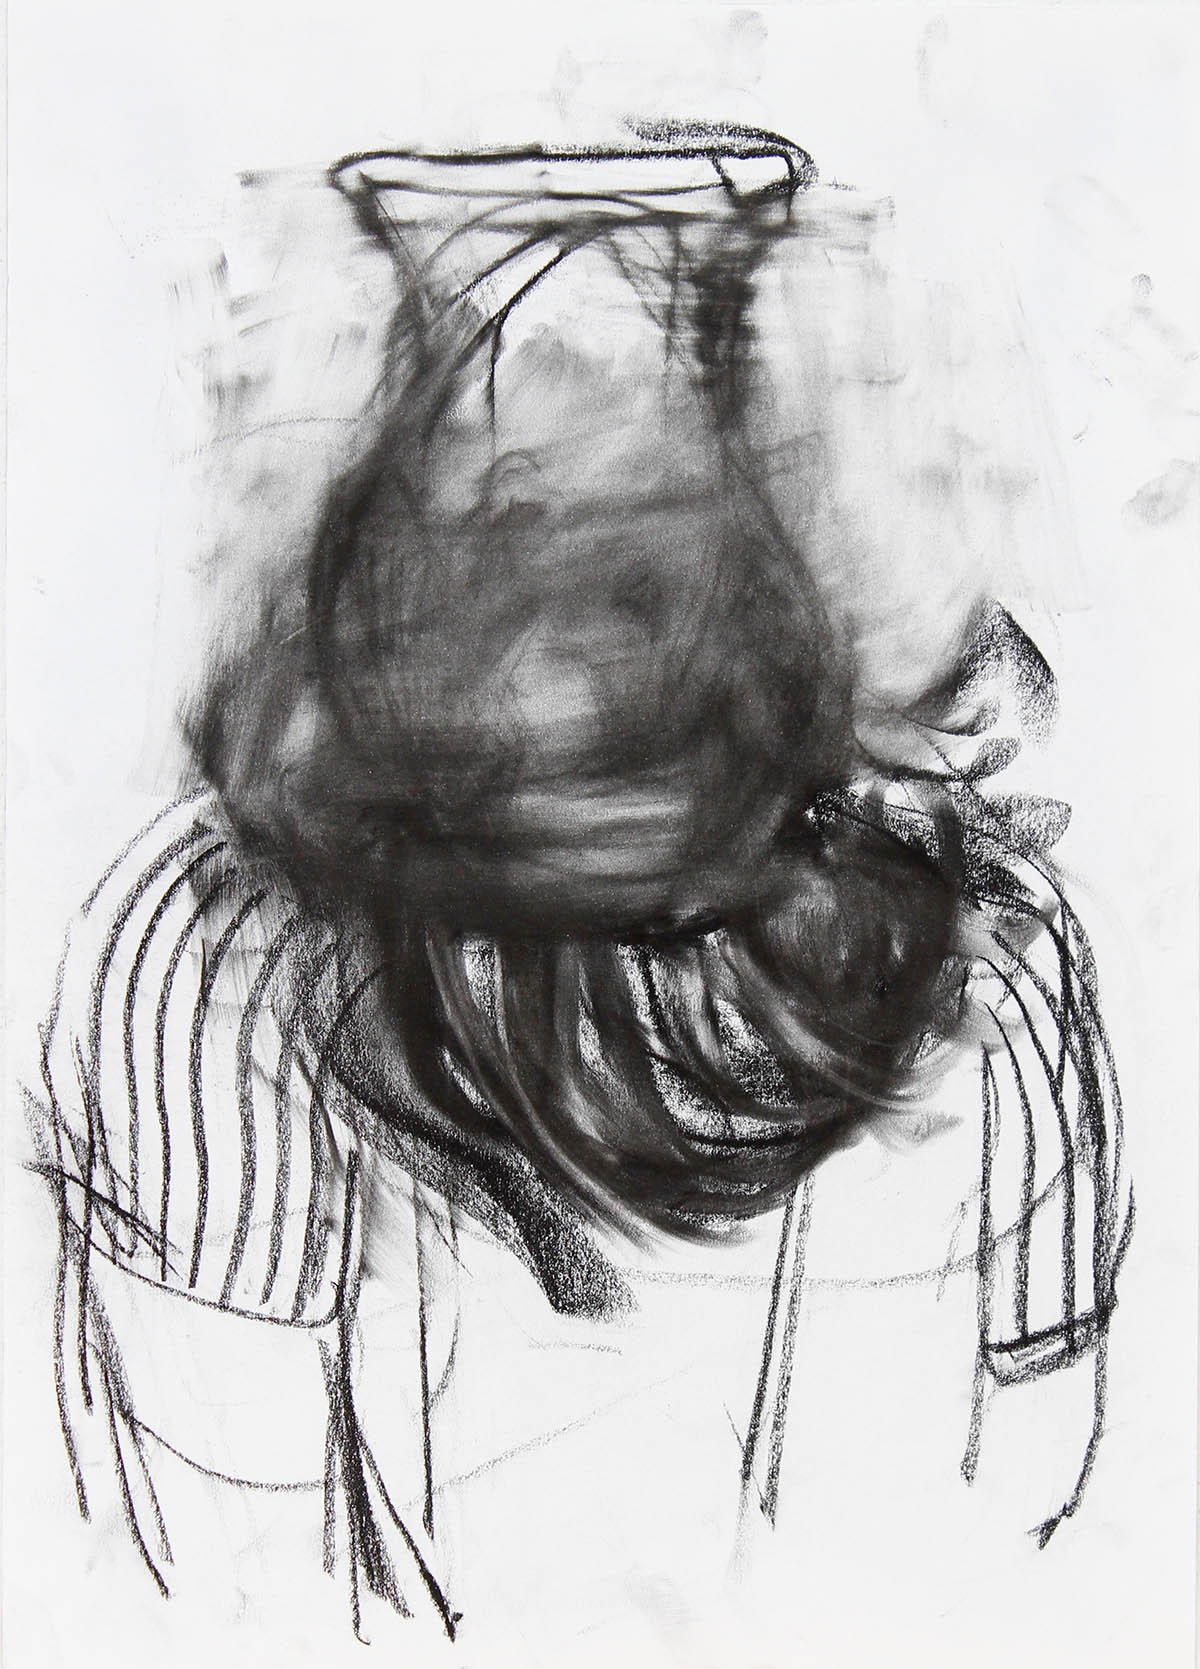 Luca Zarattini, Senza titolo 1, 2021, carbone su carta, 42 x 29,7 cm